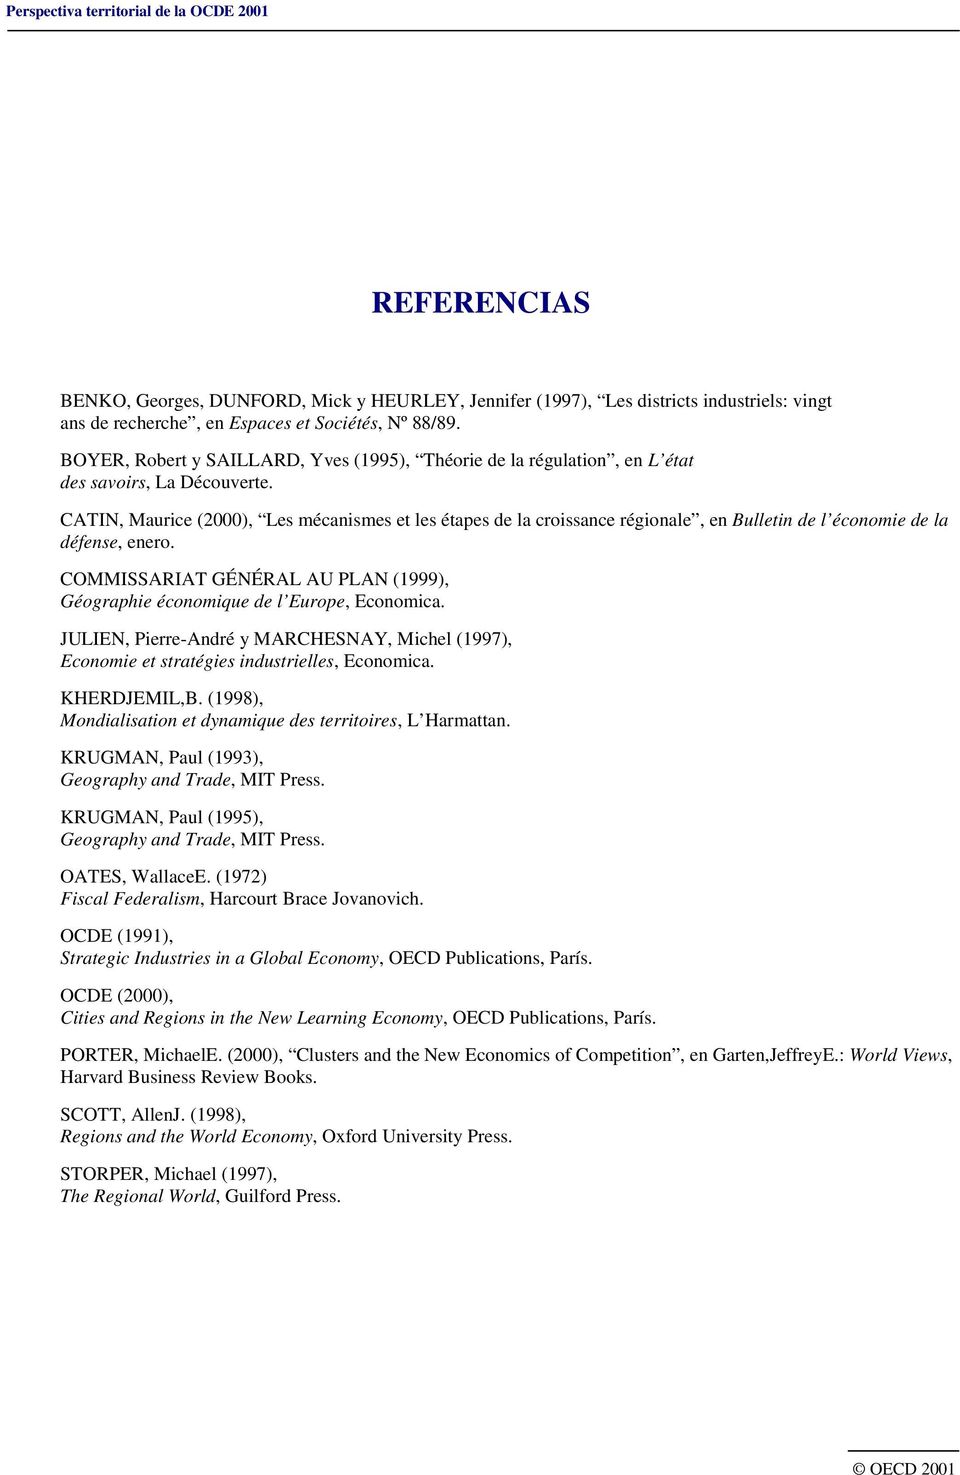 CATIN, Maurice (2000), Les mécanismes et les étapes de la croissance régionale, en Bulletin de l économie de la défense, enero.